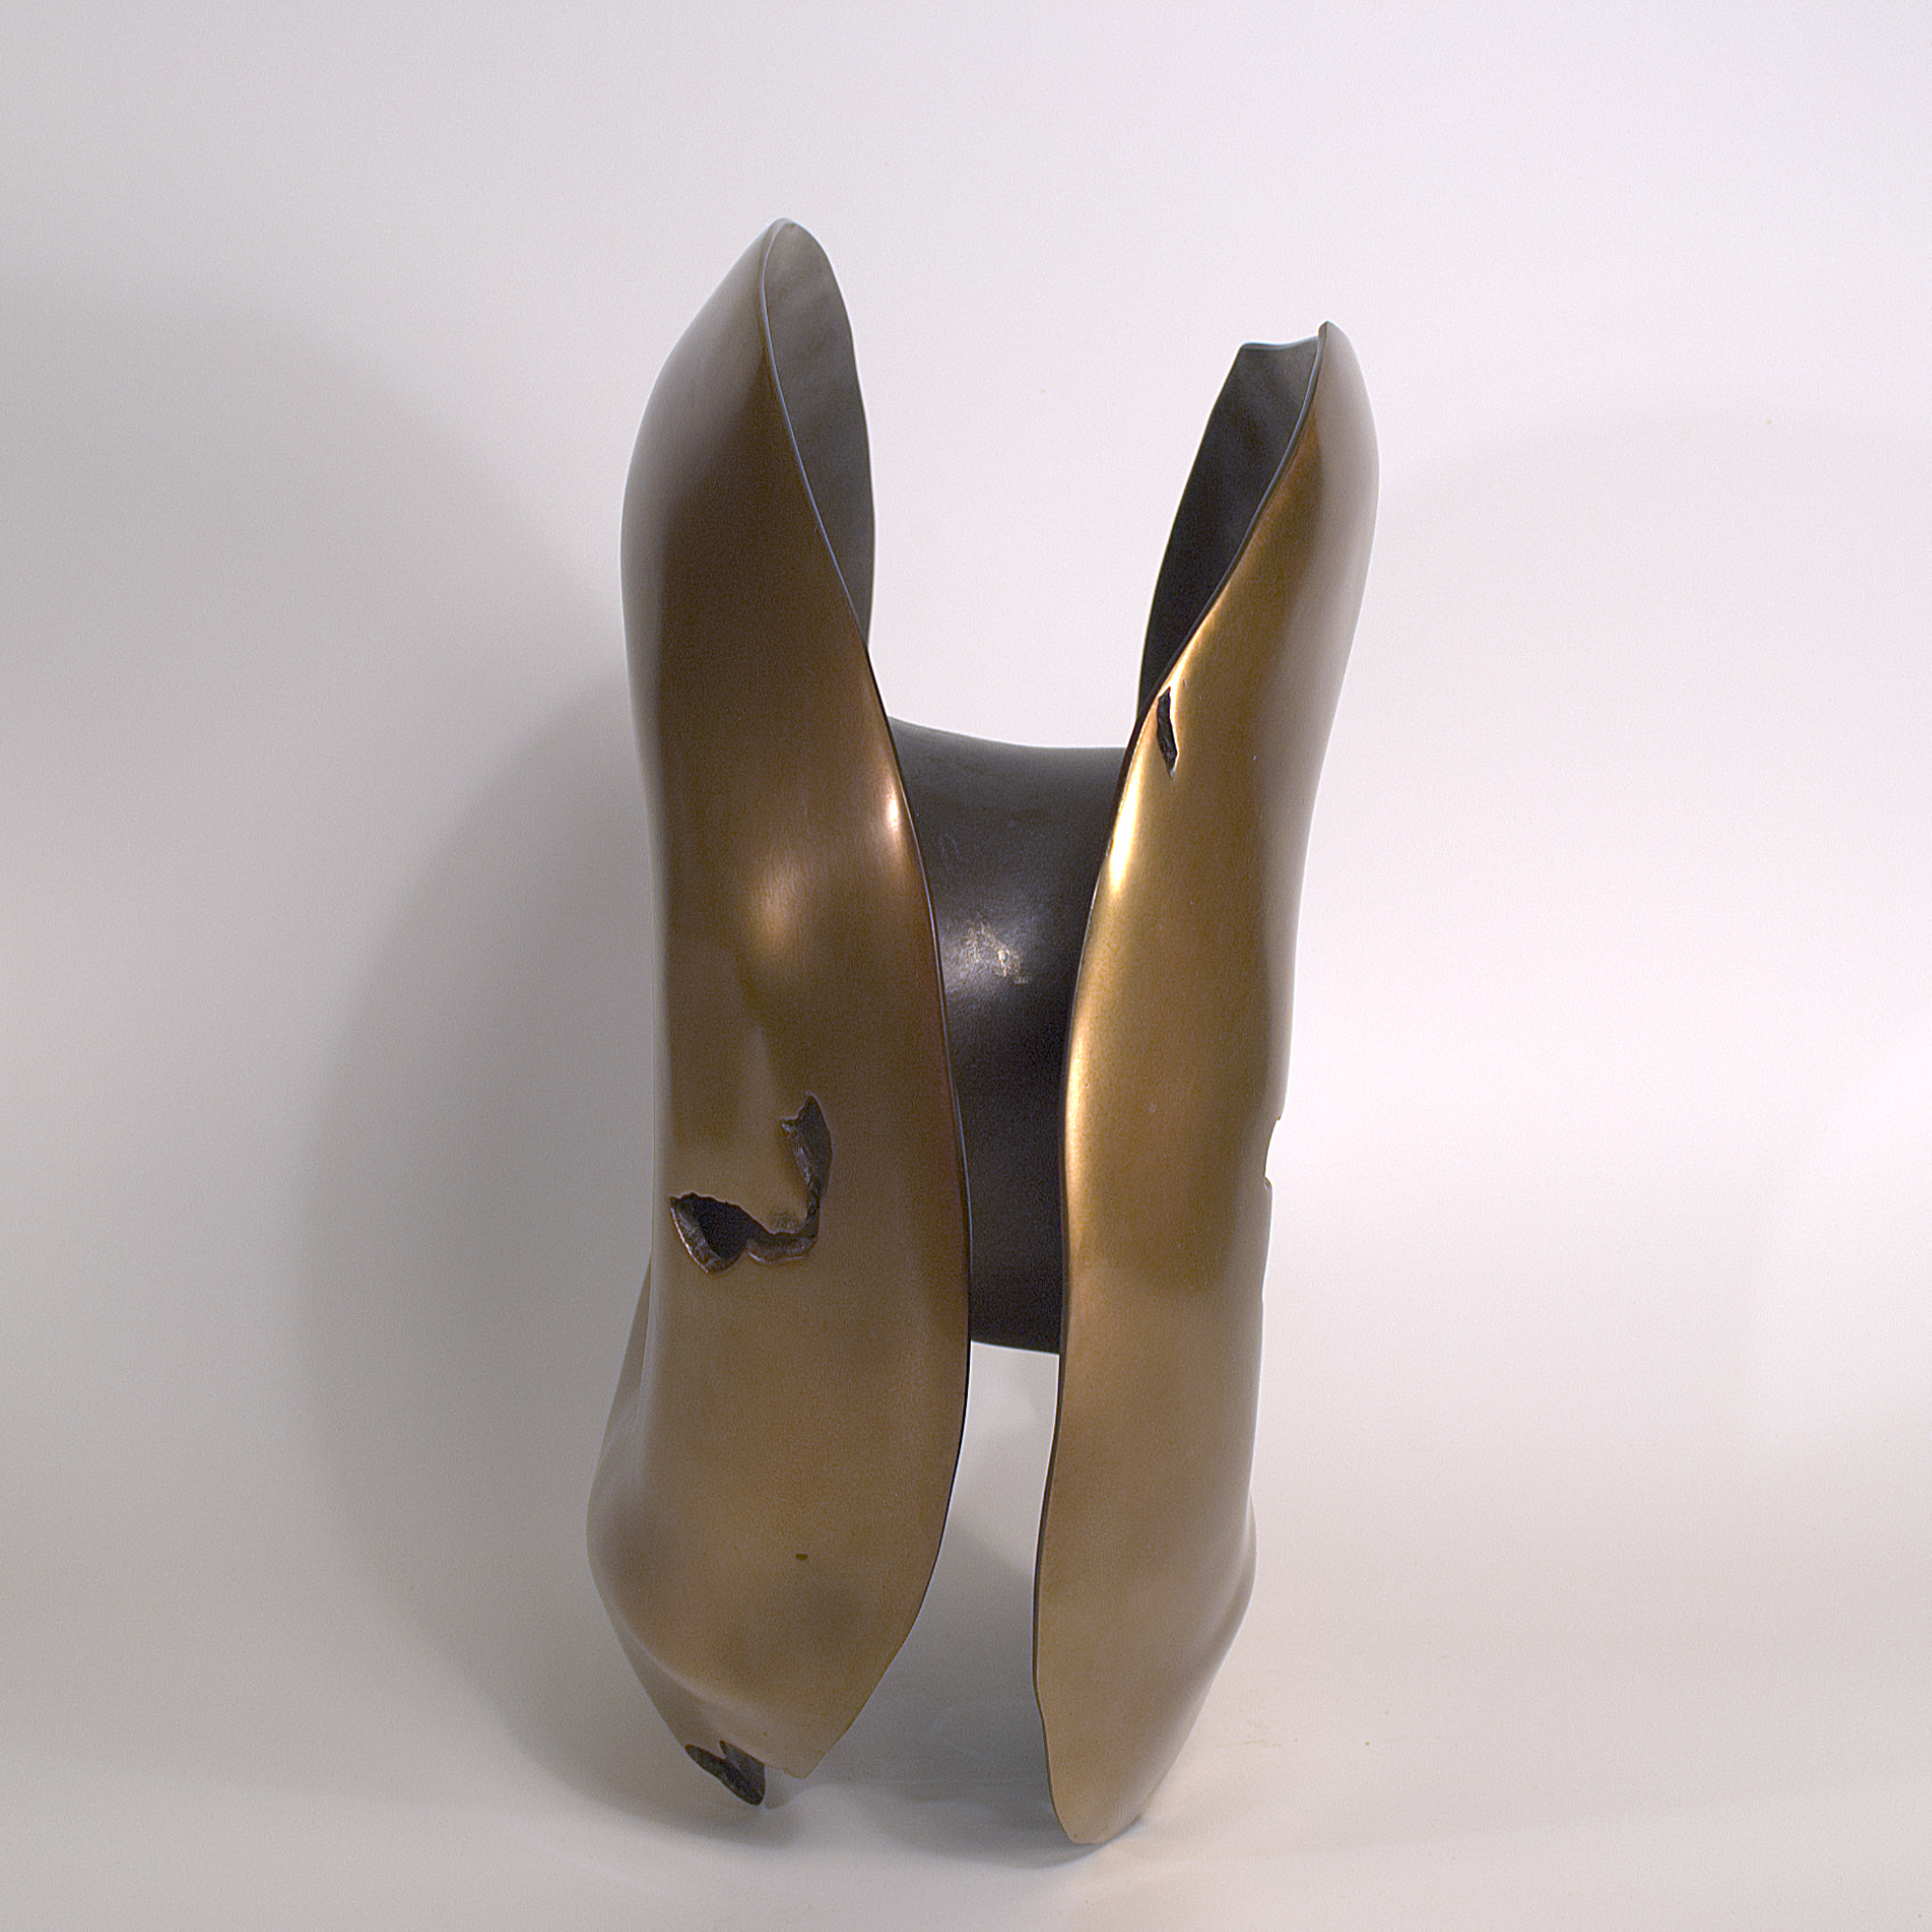 Annular form #2. Modern bronze sculpture by Steve Howlett. 2013